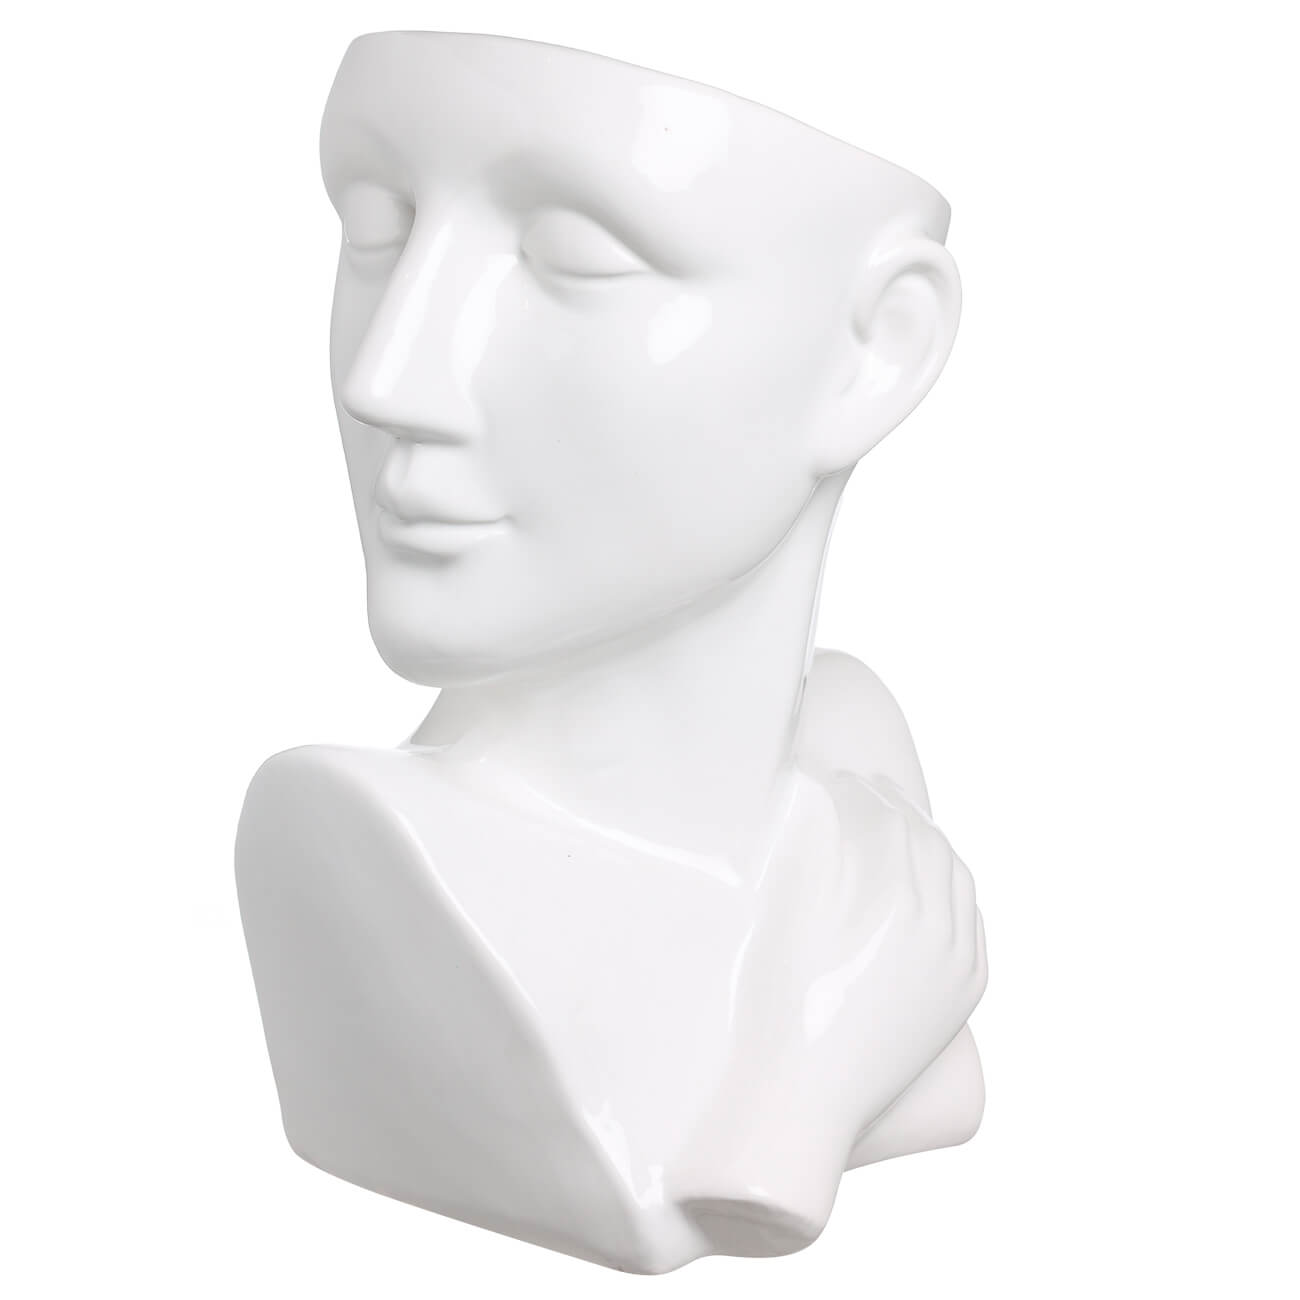 Ваза для цветов, 25 см, декоративная, керамика, белая, Голова и рука, Face ваза для ов 26 см декоративная керамика белая лицо face